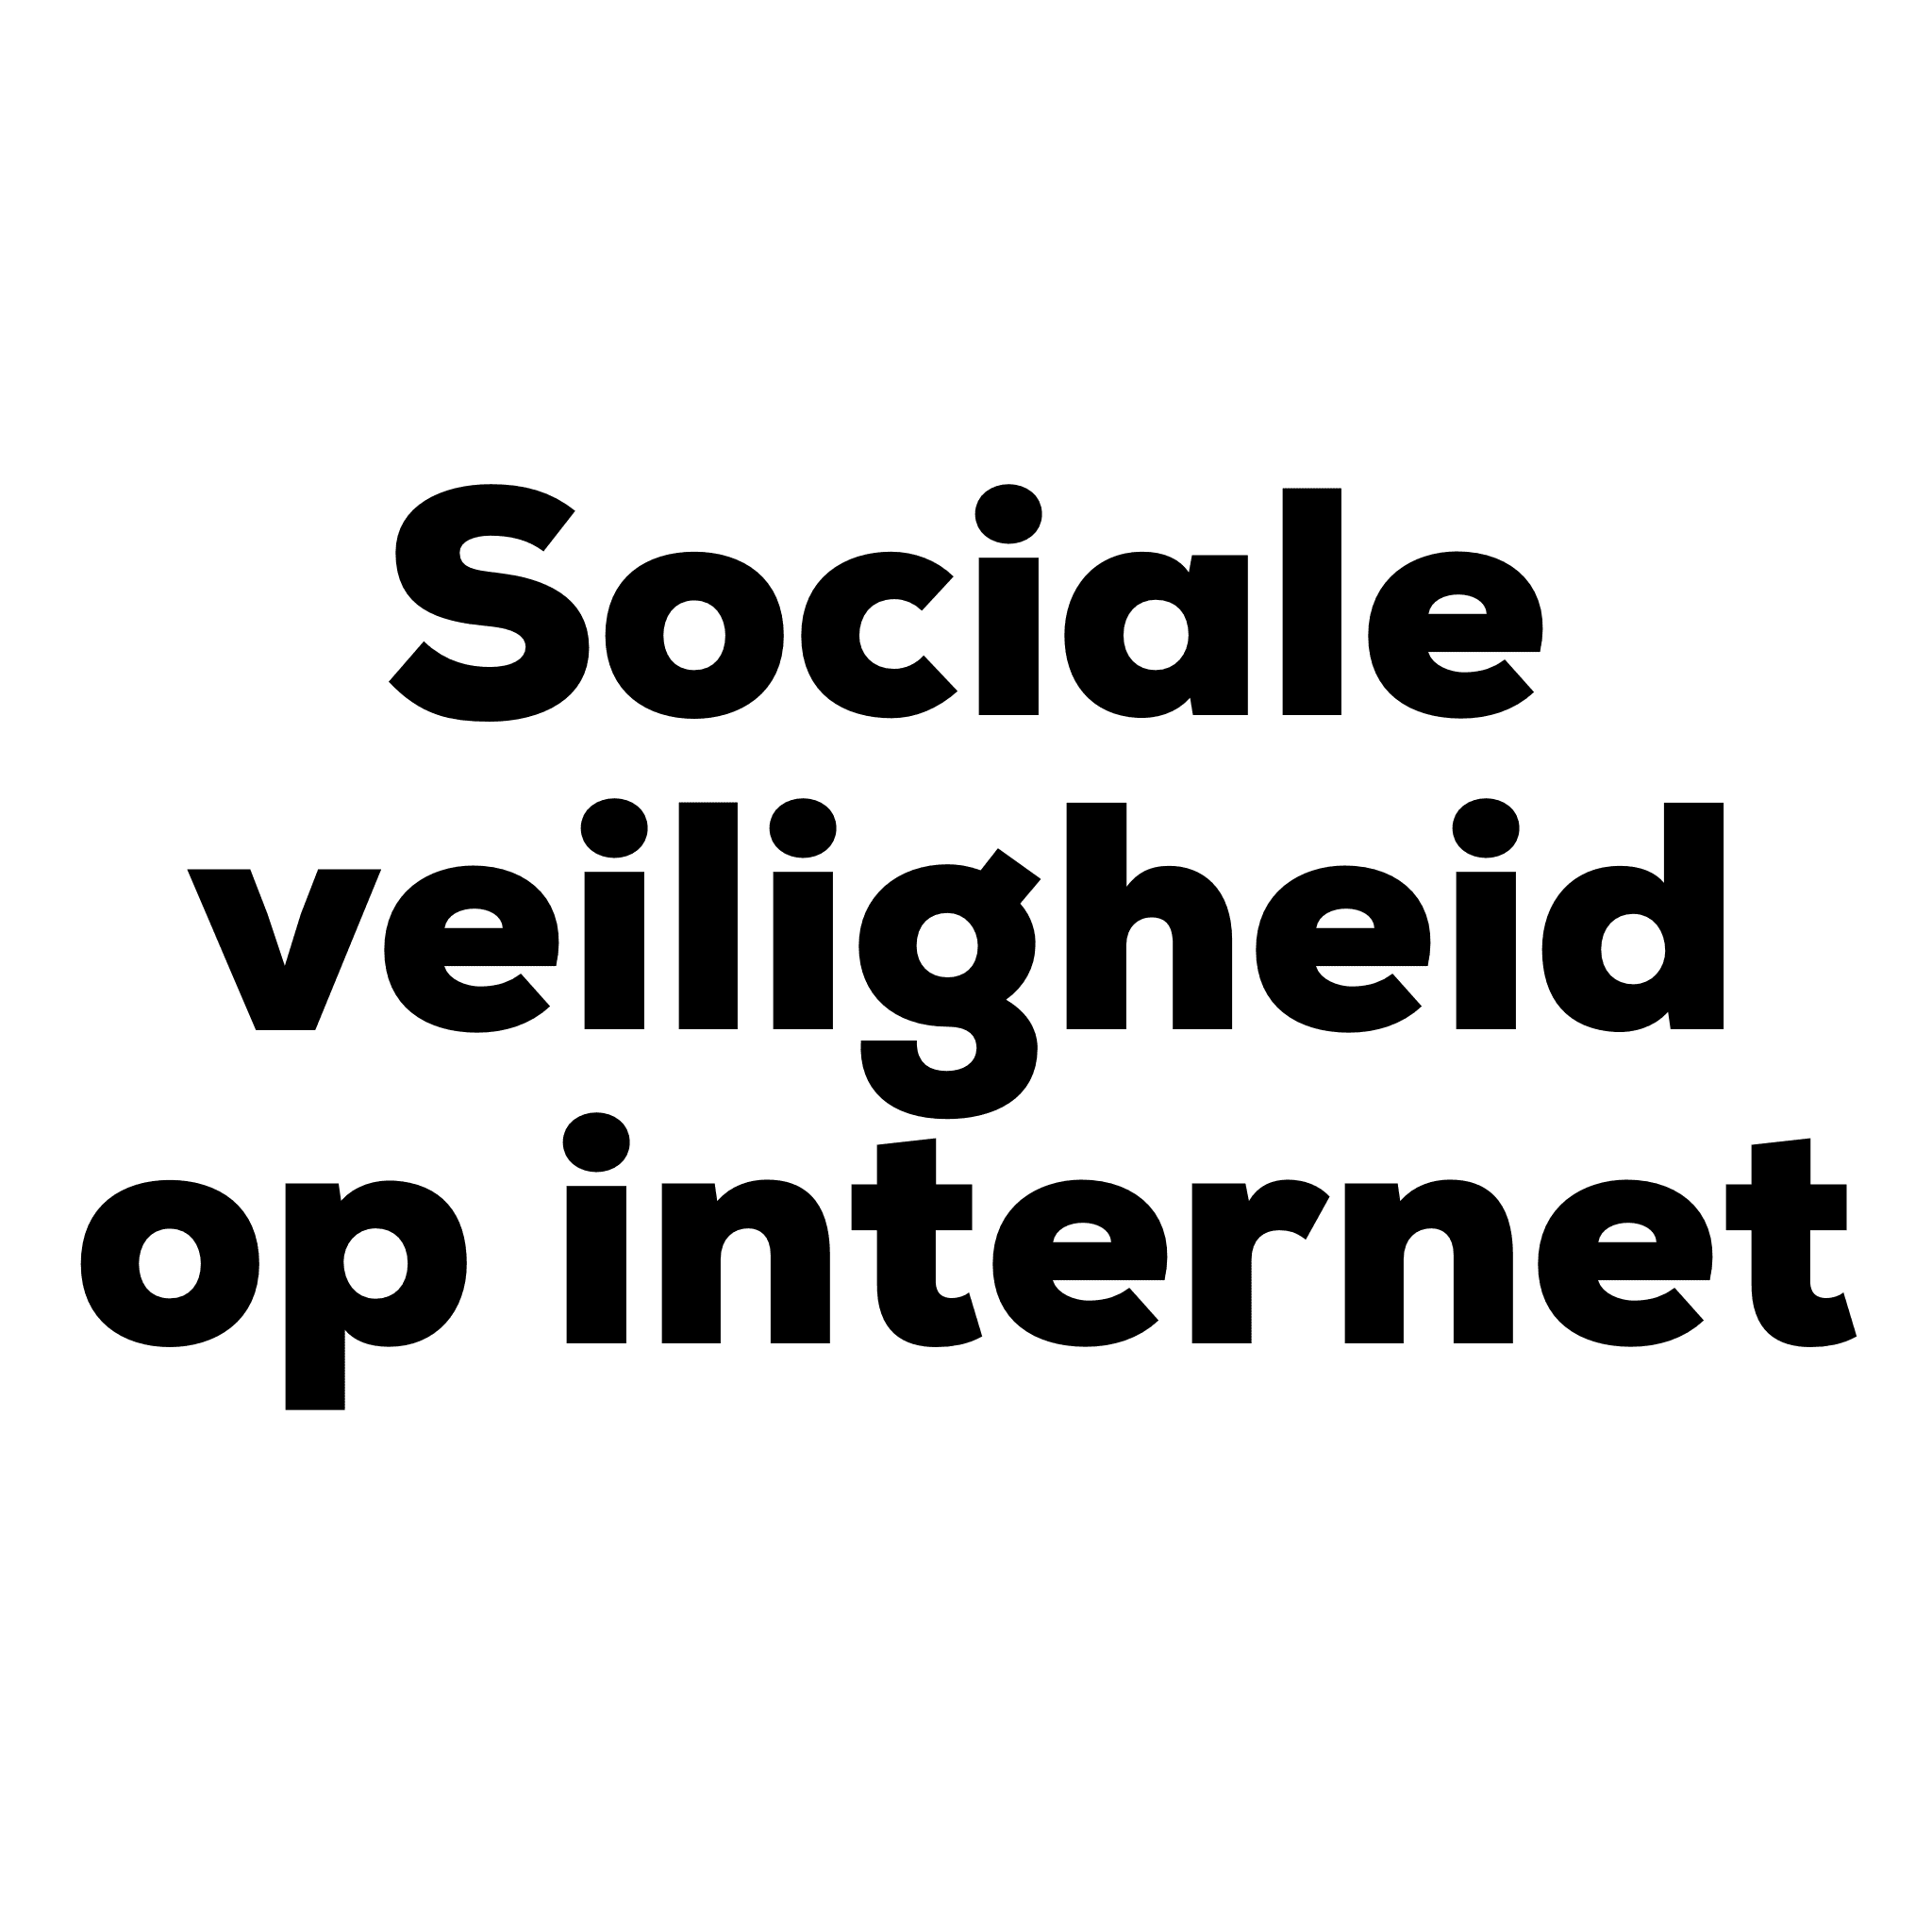 Workshop Sociale veiligheid op internet